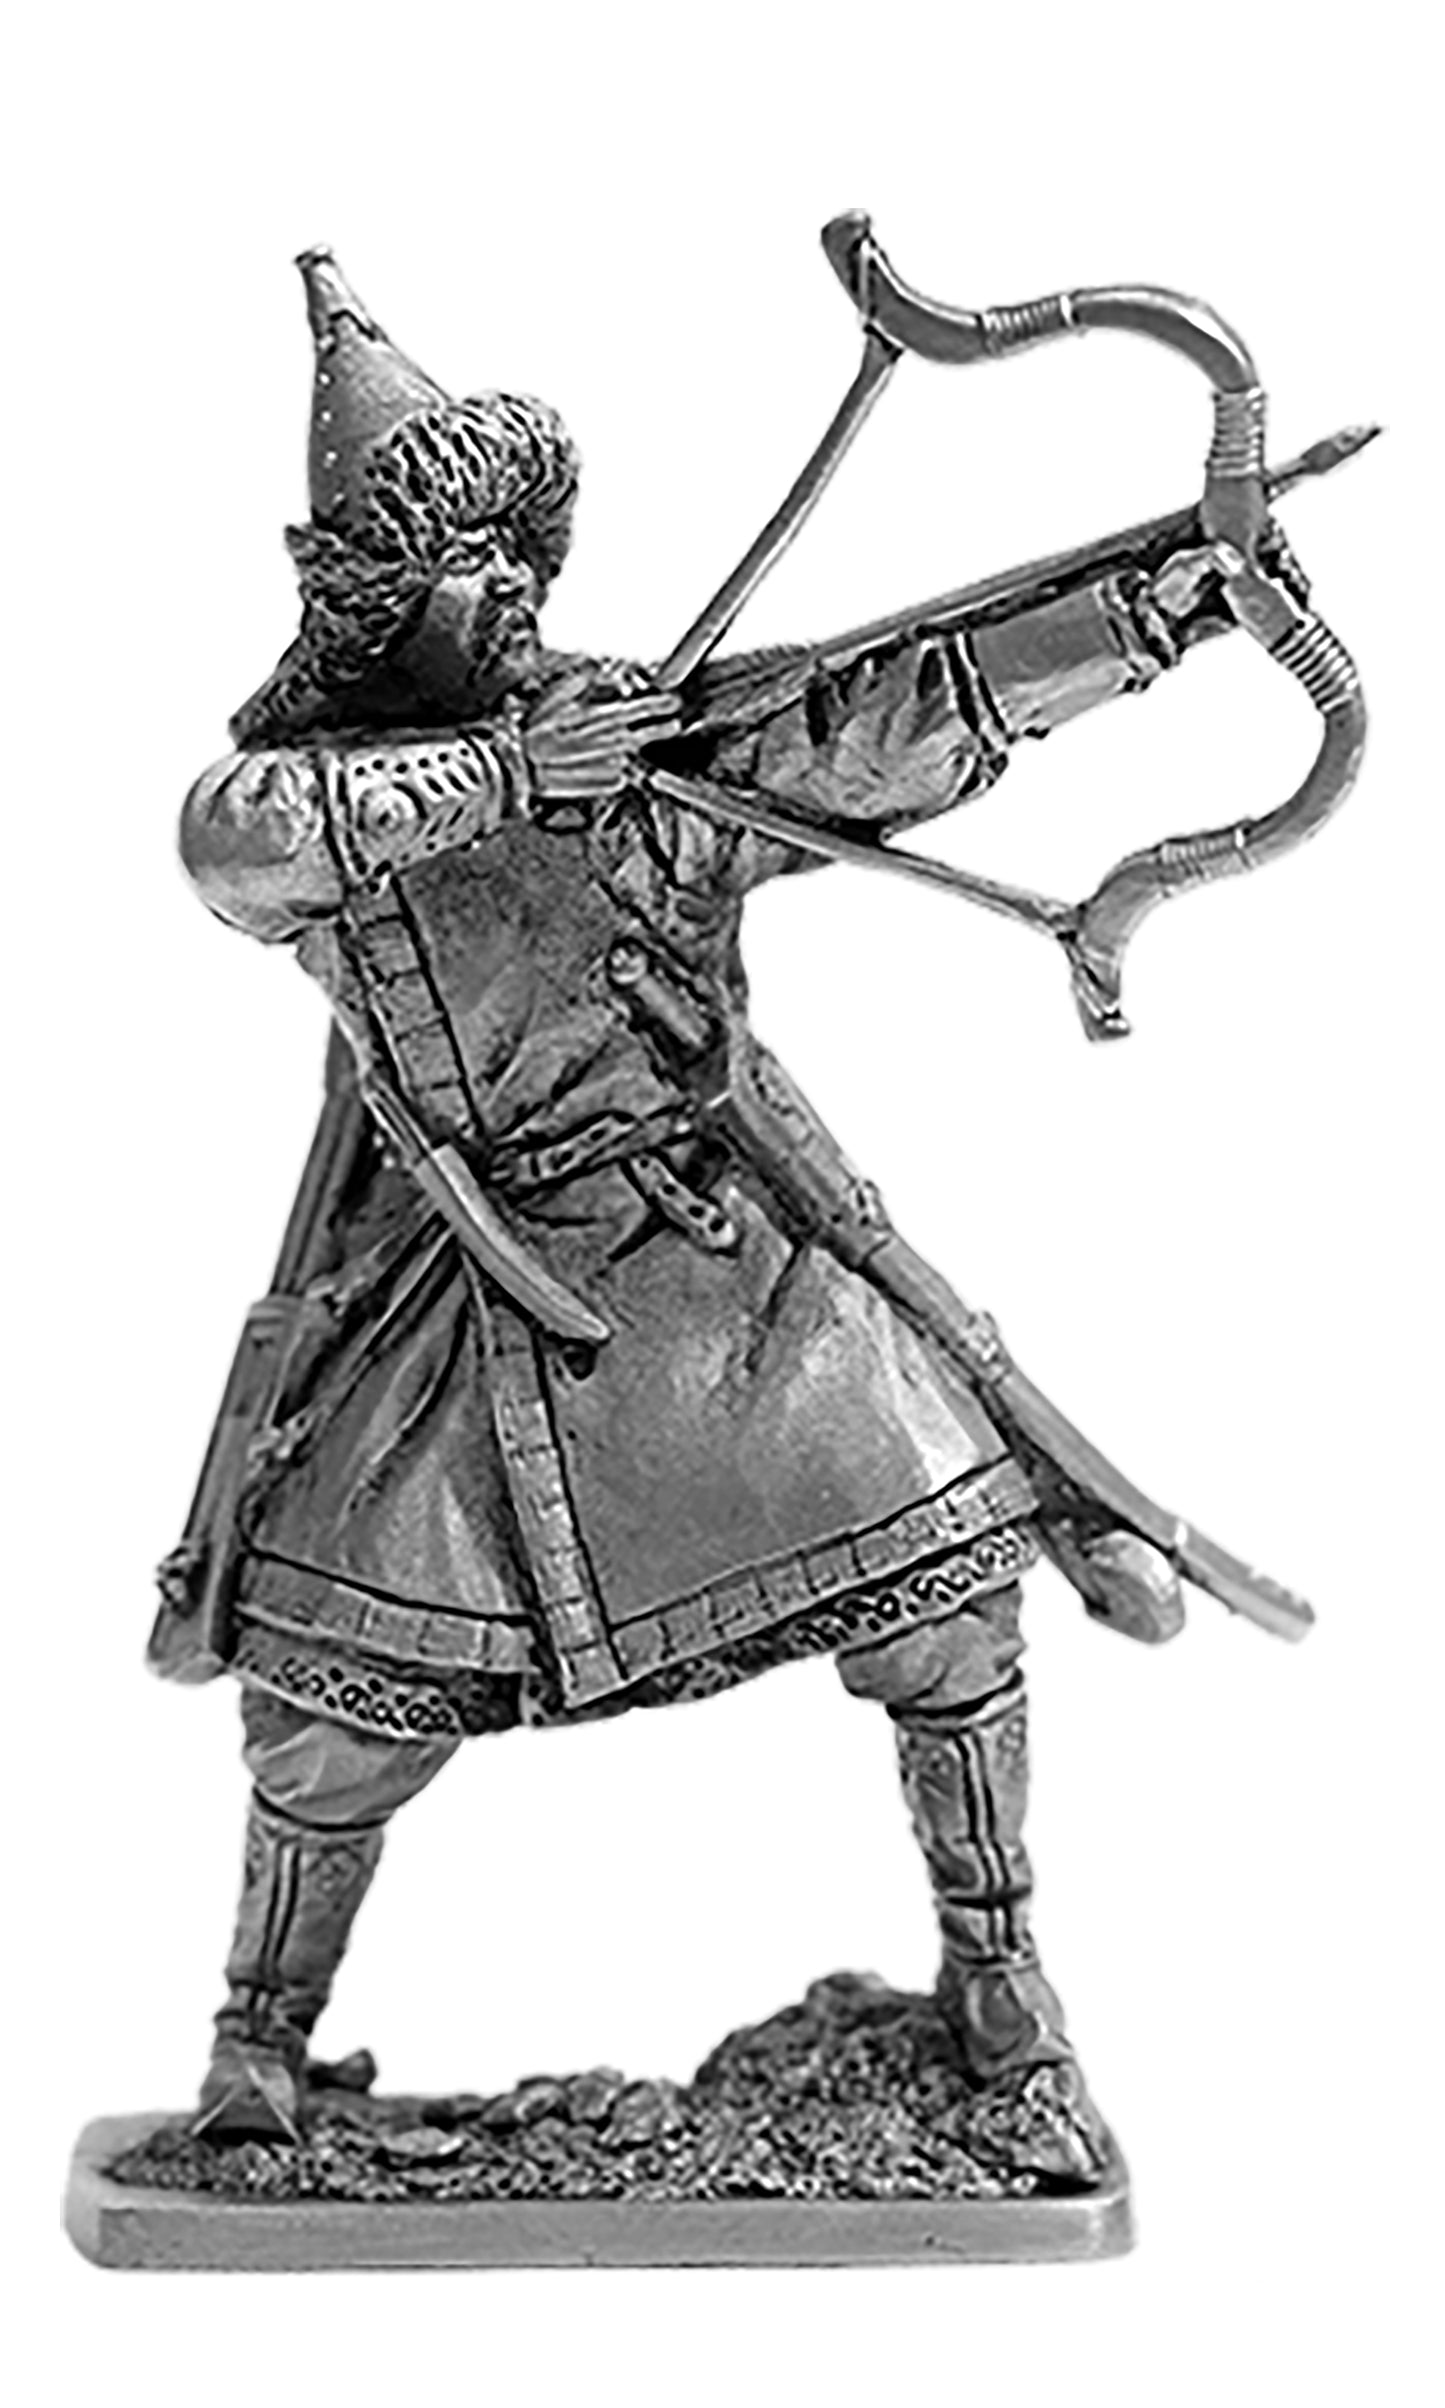 EK-HR-02 - монгольский лучник, 13 век